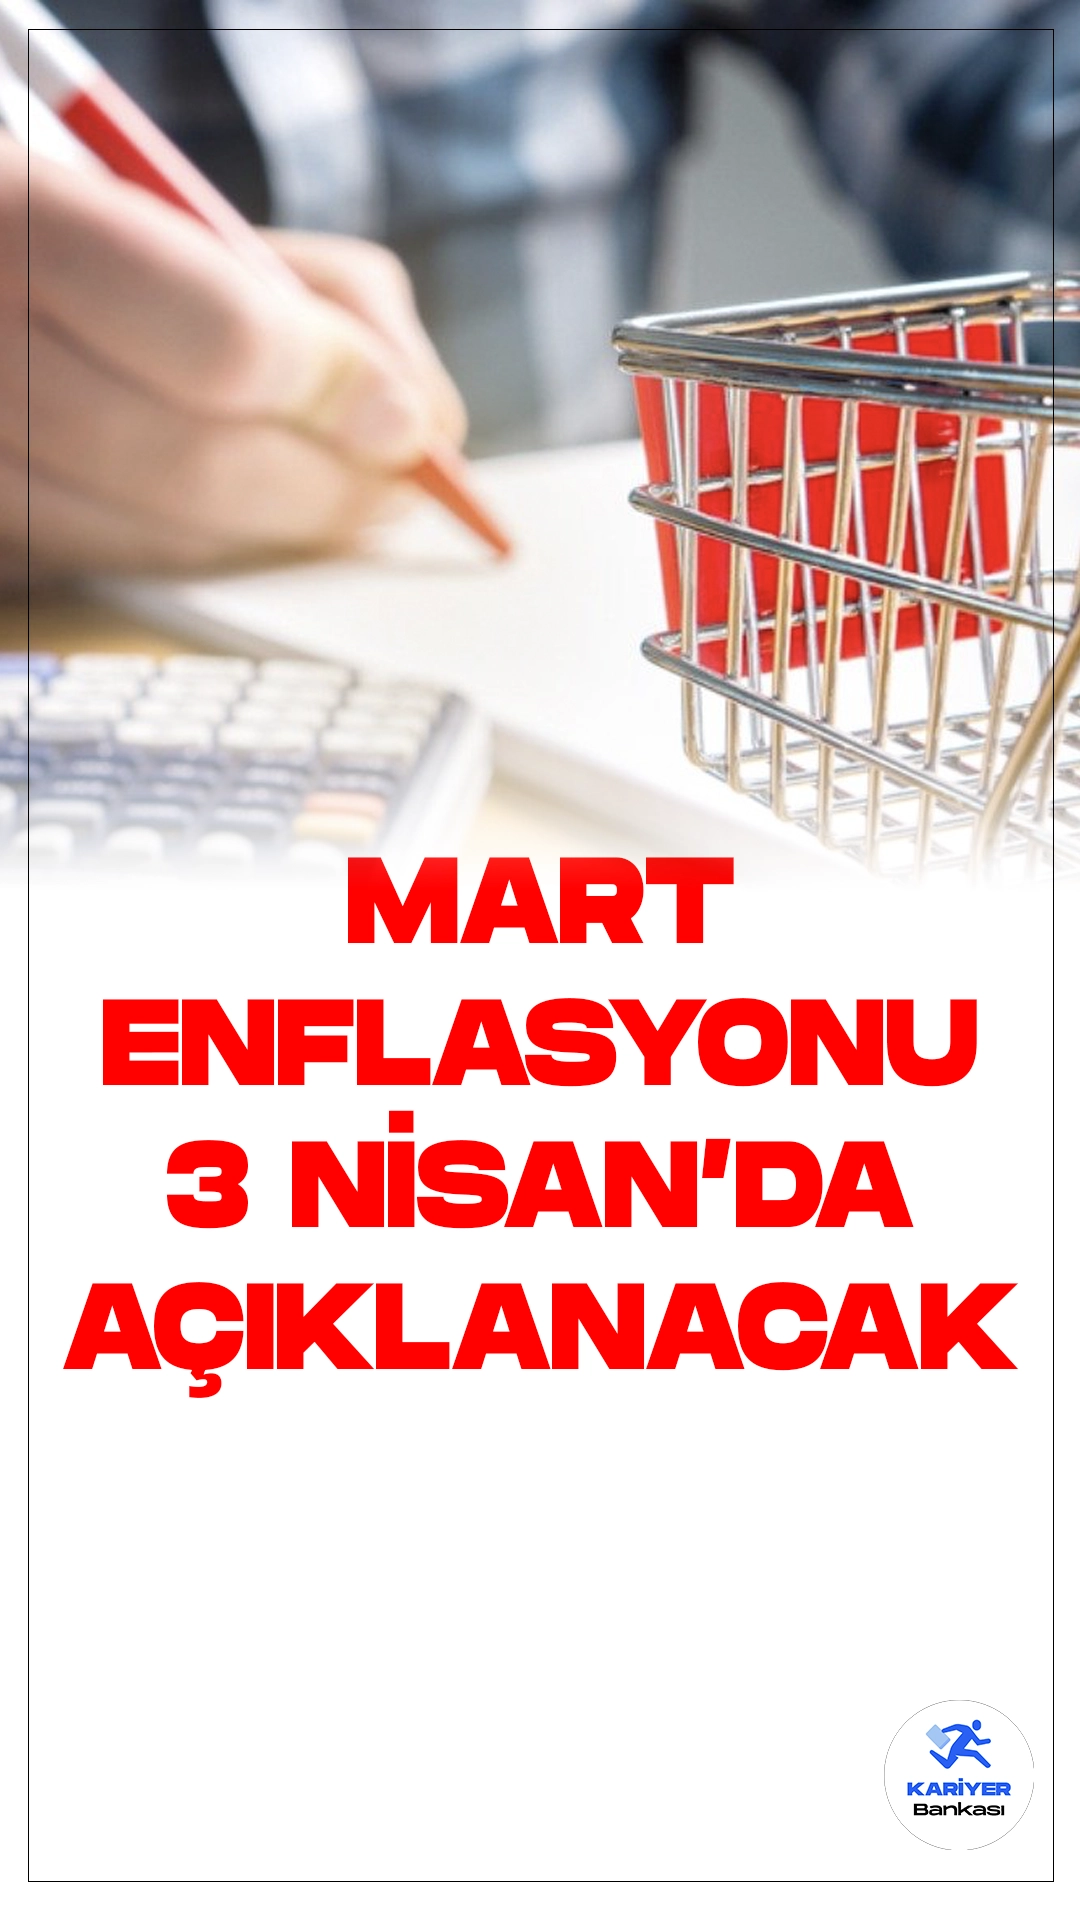 Mart Ayı Enflasyon Rakamları 3 Nisan'da Açıklanacak.Türkiye İstatistik Kurumu, 3 Nisan Çarşamba günü, yılın üçüncü enflasyon verilerini içeren mart ayı enflasyon rakamlarını açıklayacak.